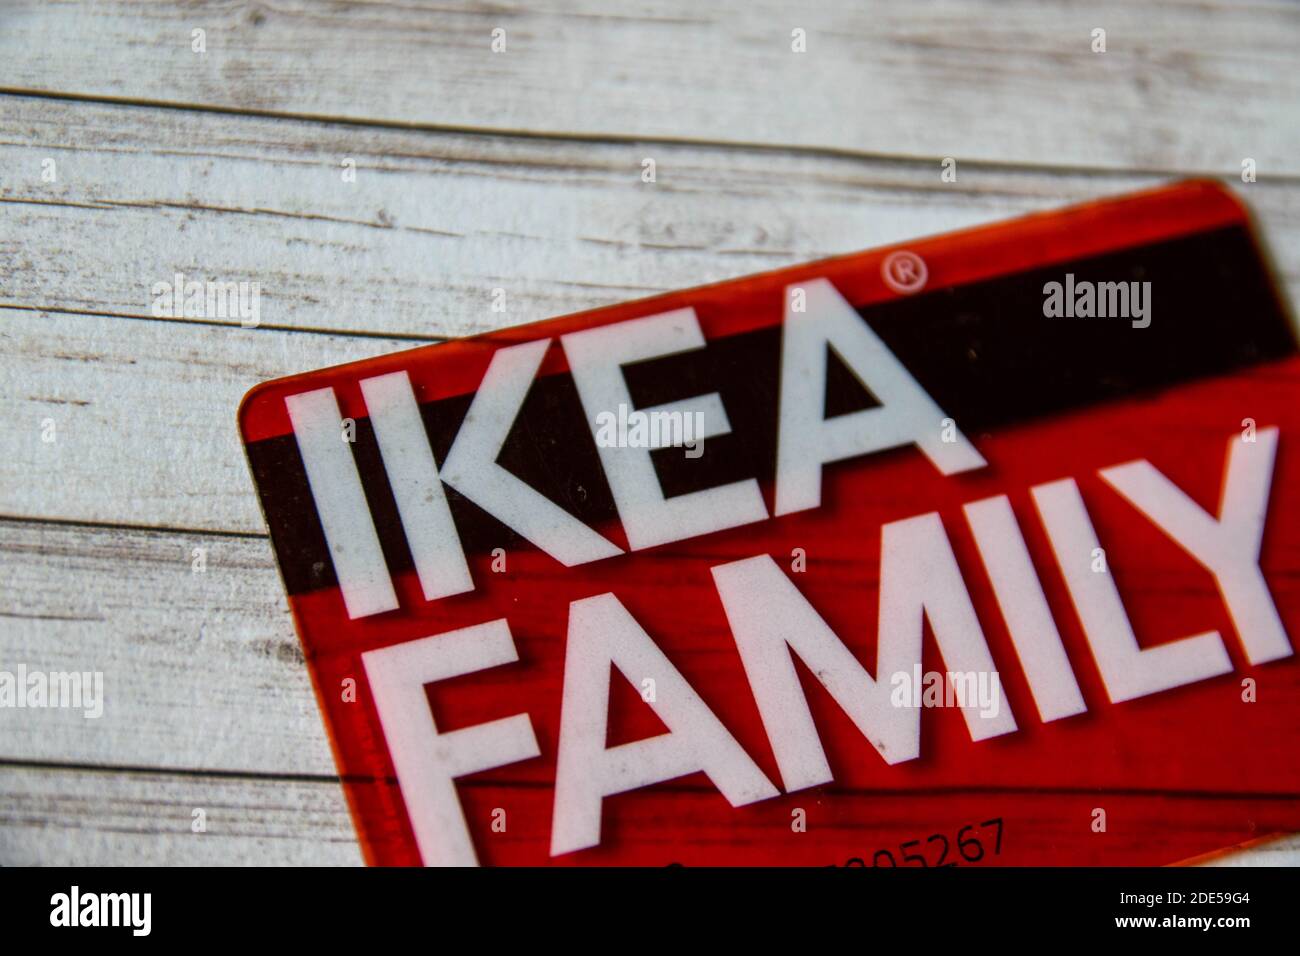 Ikea family card immagini e fotografie stock ad alta risoluzione - Alamy